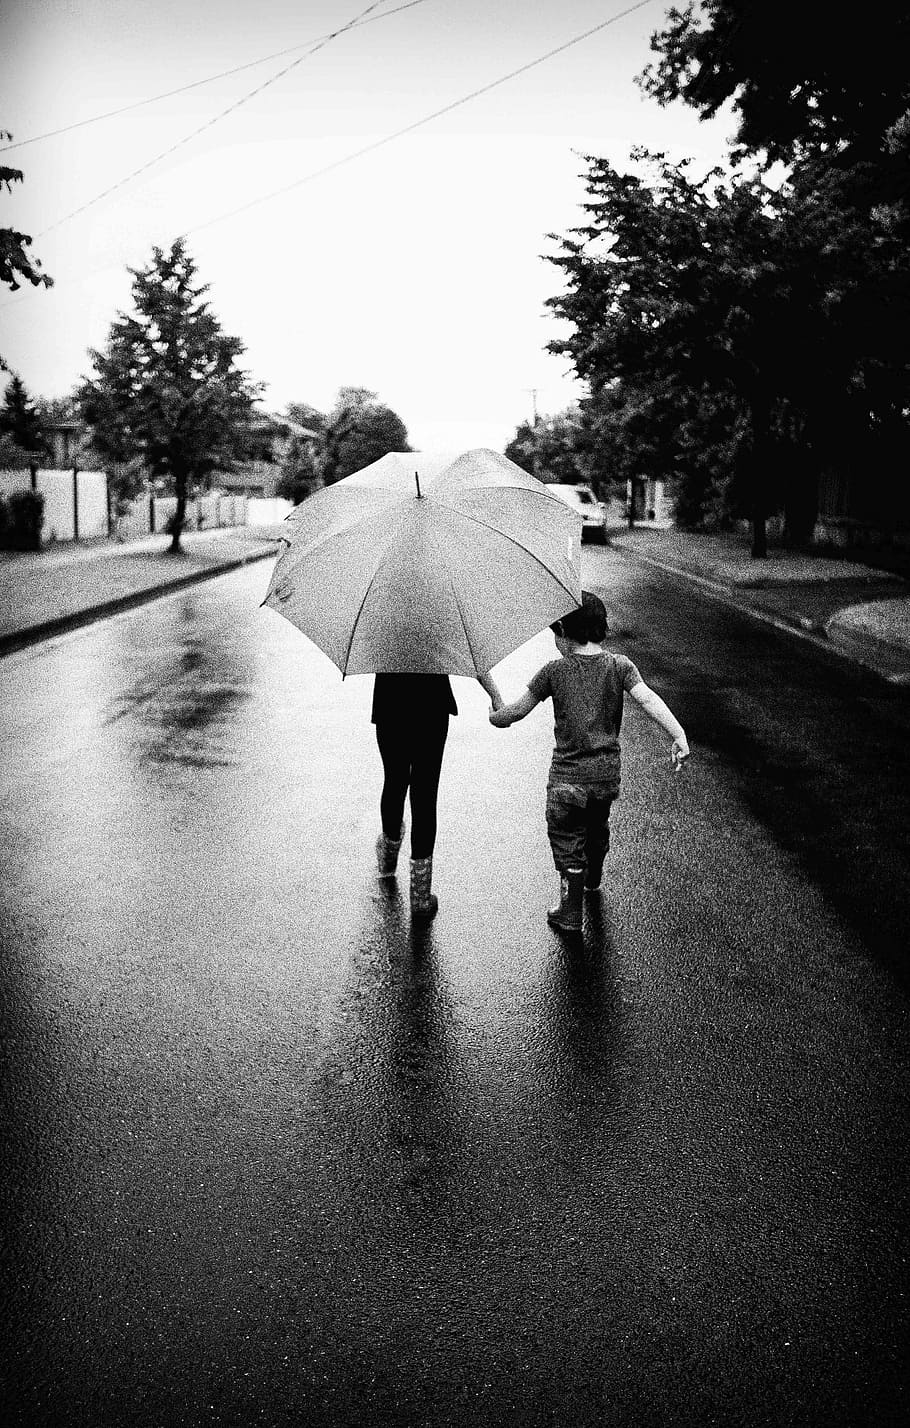 Paraguas, Caminando, Al aire libre, lluvia, jóvenes, vertiendo, diversión, blanco y negro, calle, barrio